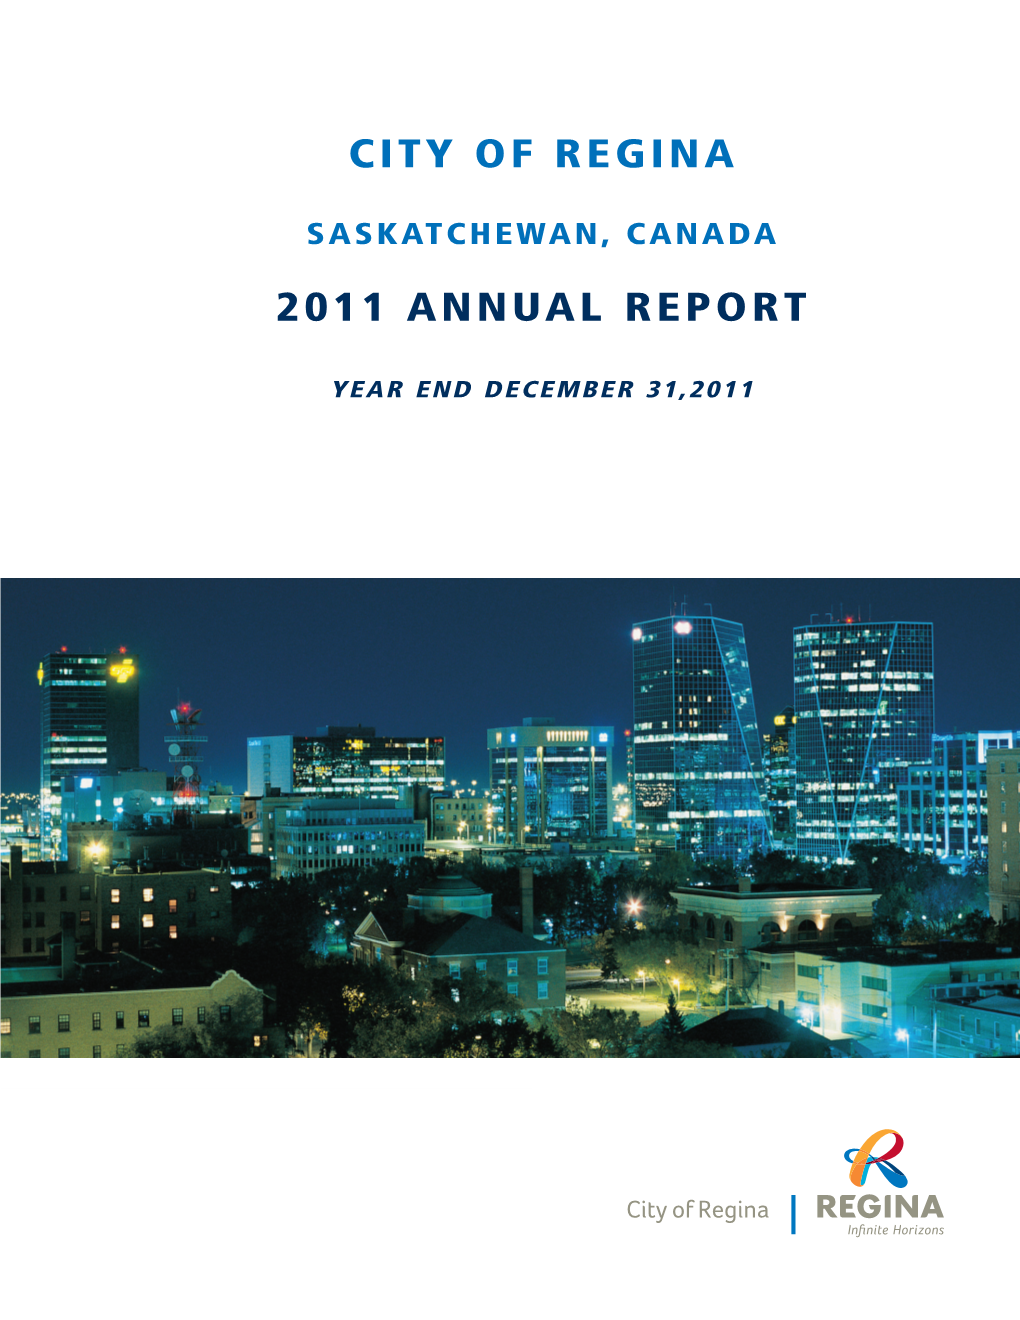 City of Regina 2011 Annual Report